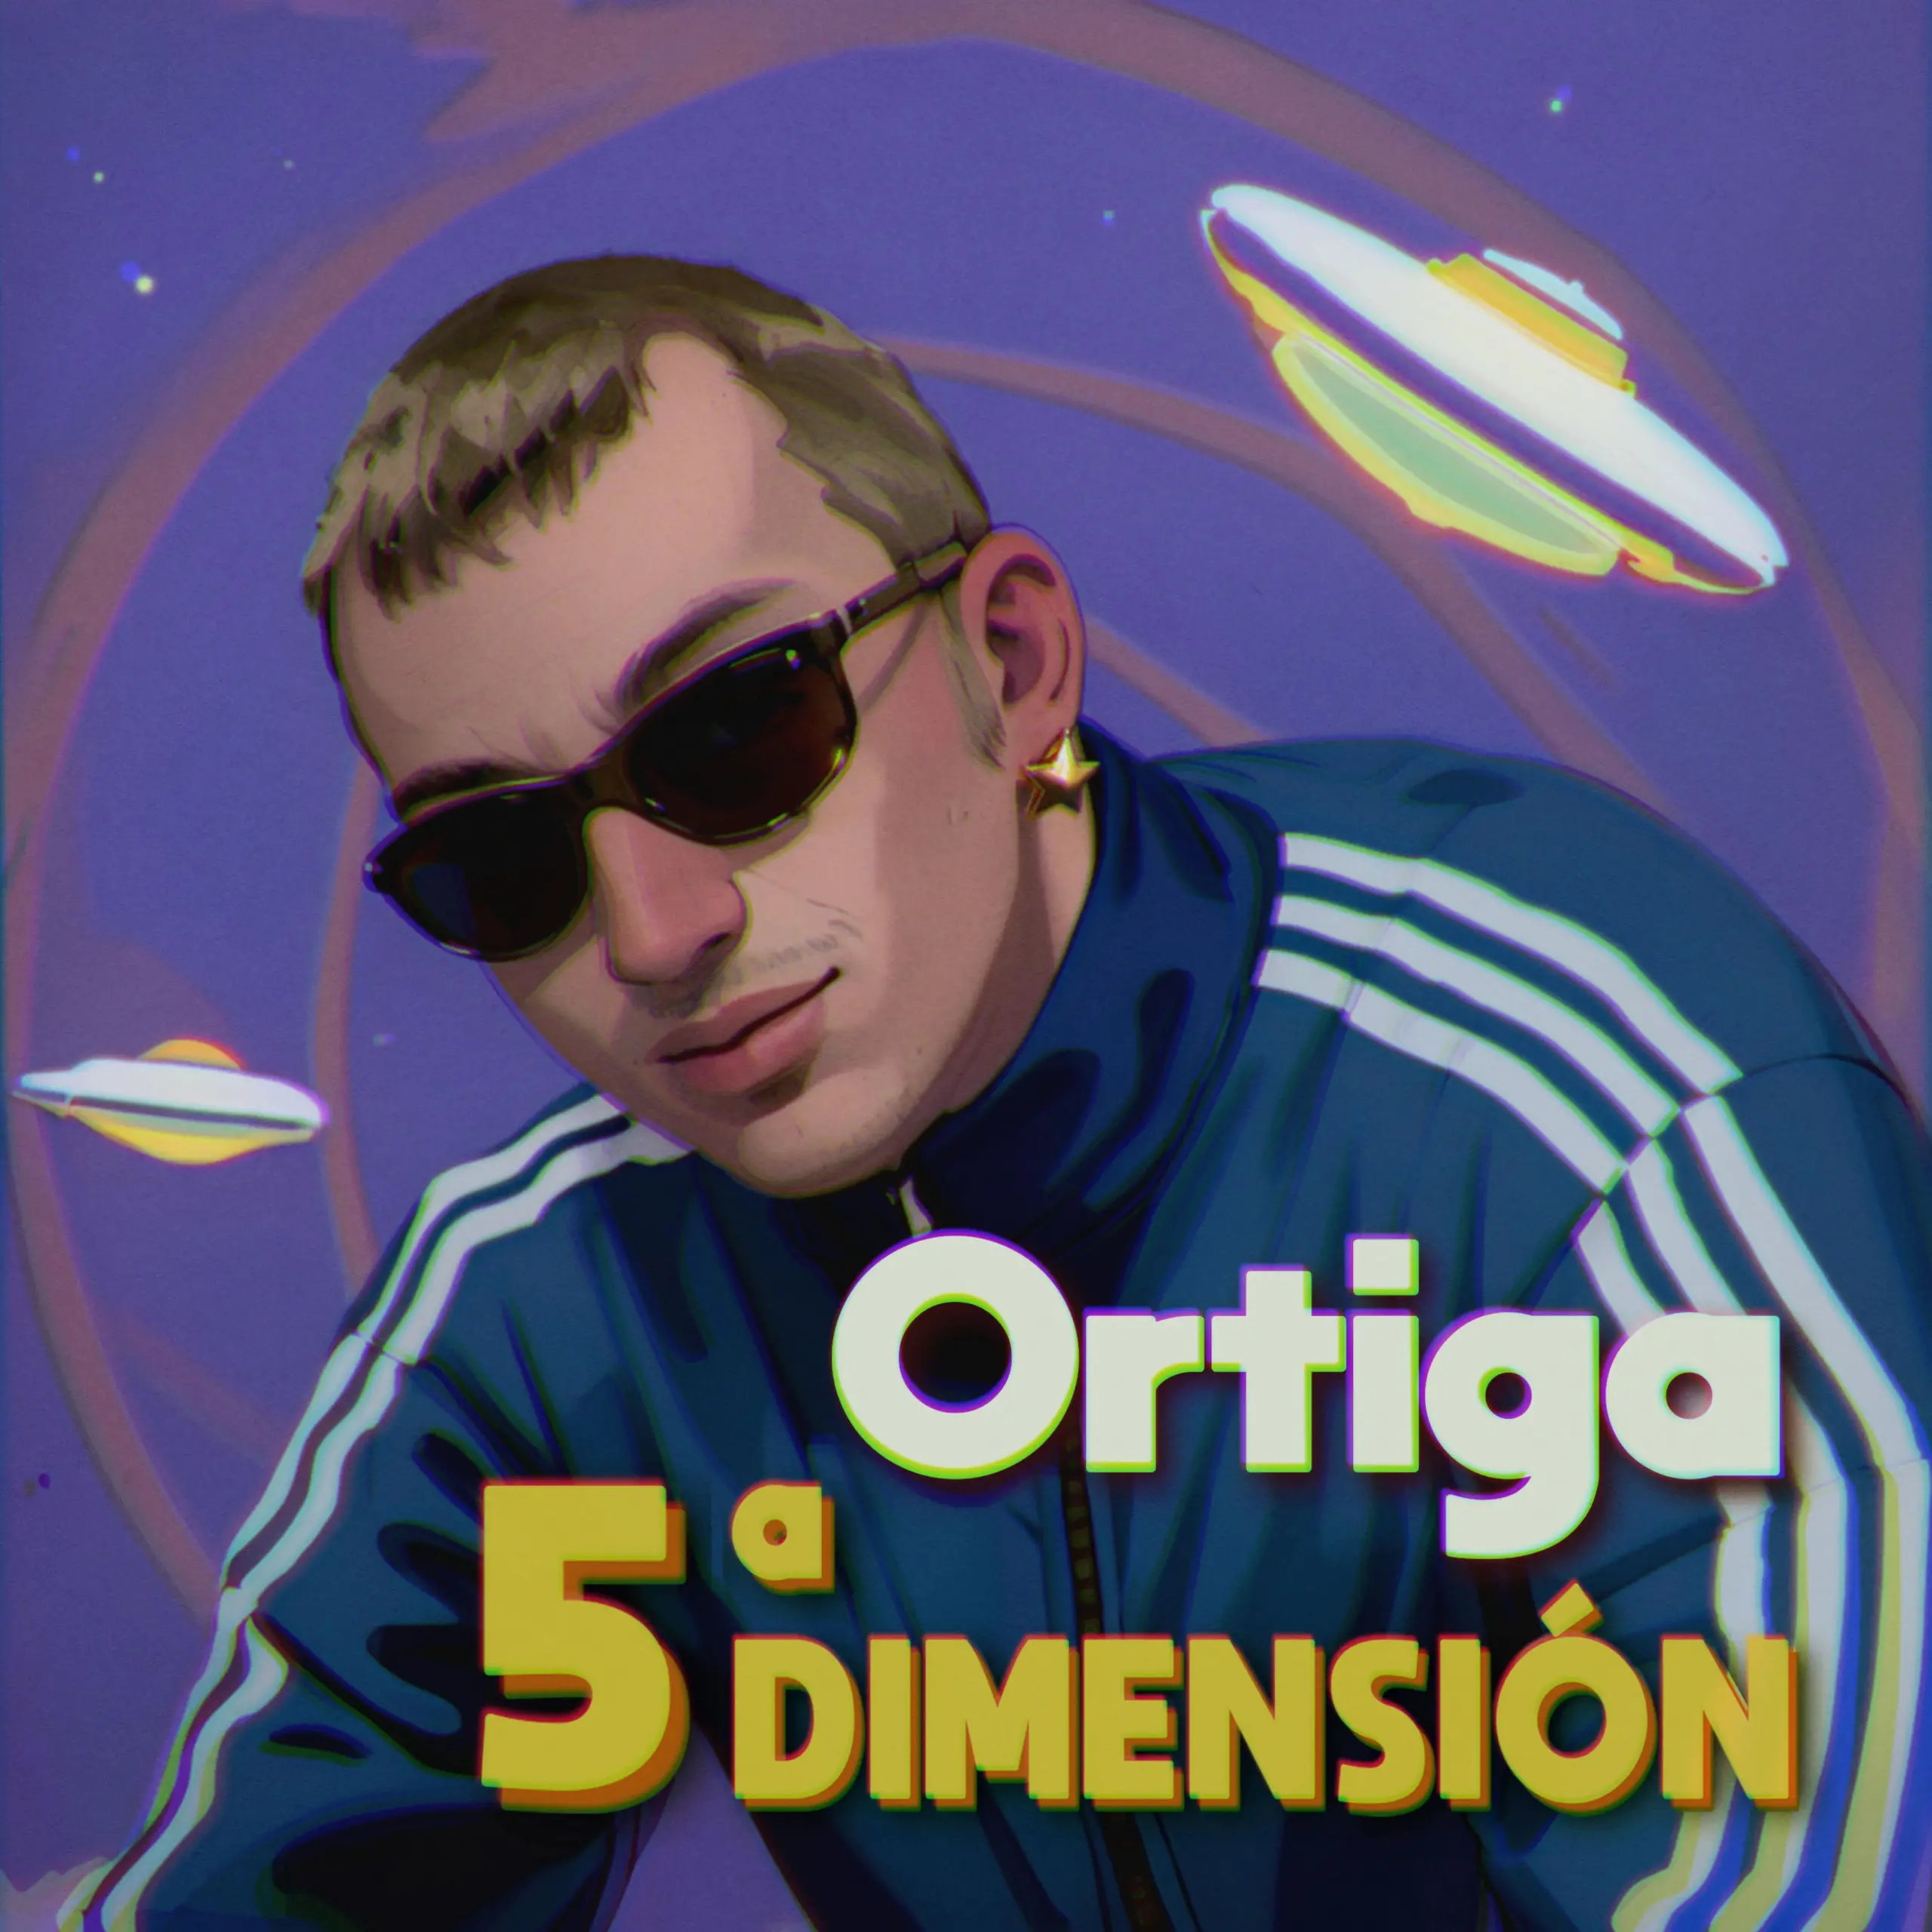 Ortiga publica nuevo sencillo titulado "5a dimensión"